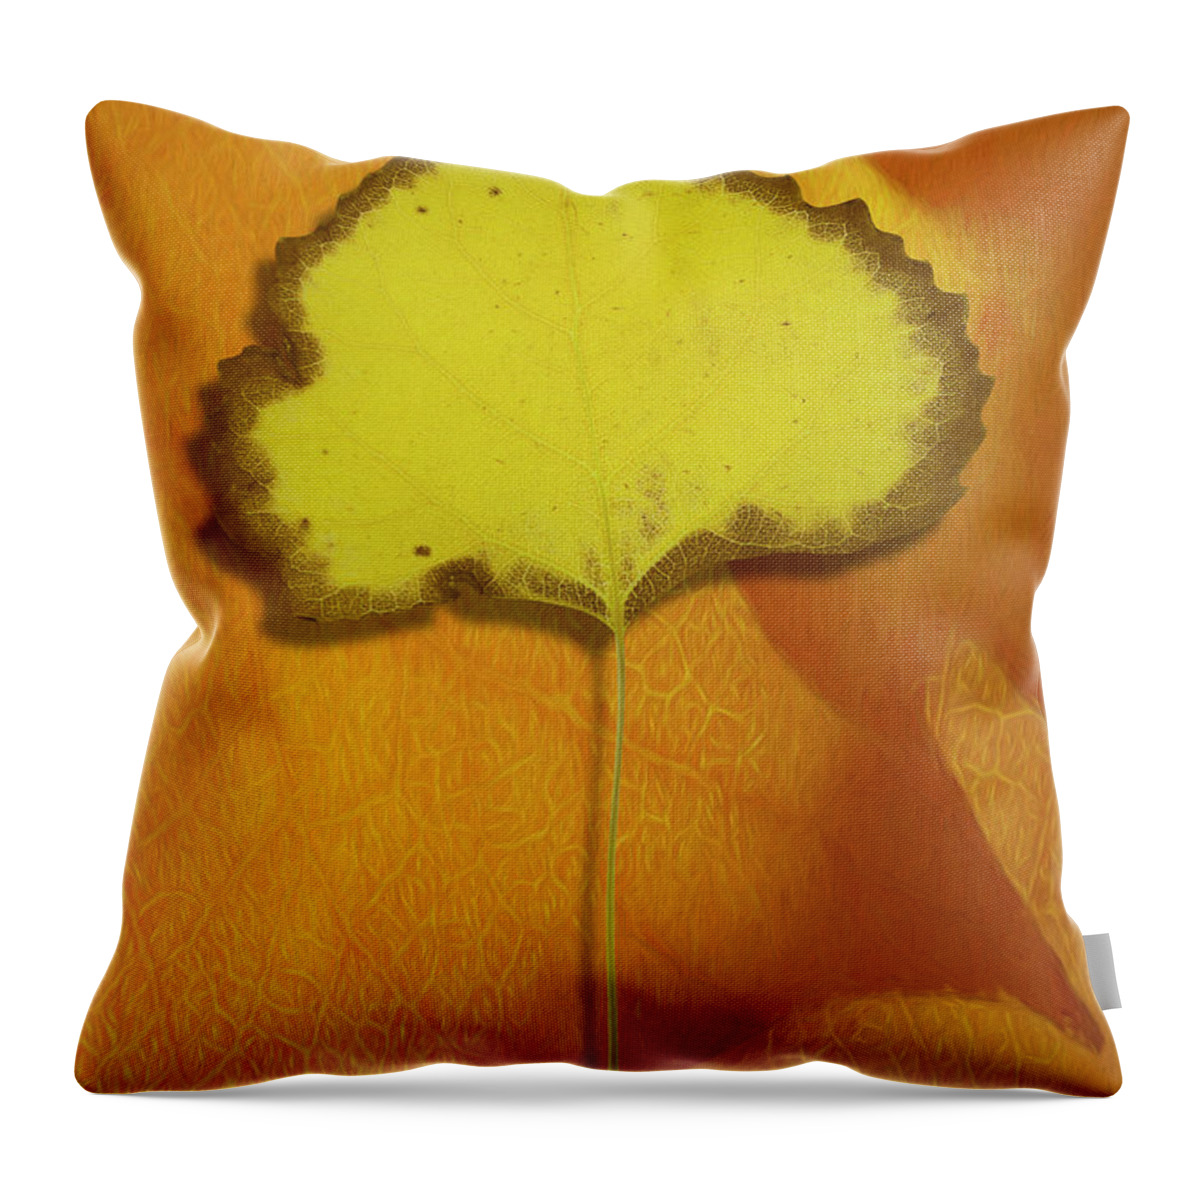 Desert Forest Garden Throw Pillow featuring the digital art Golden Oldie by Becky Titus